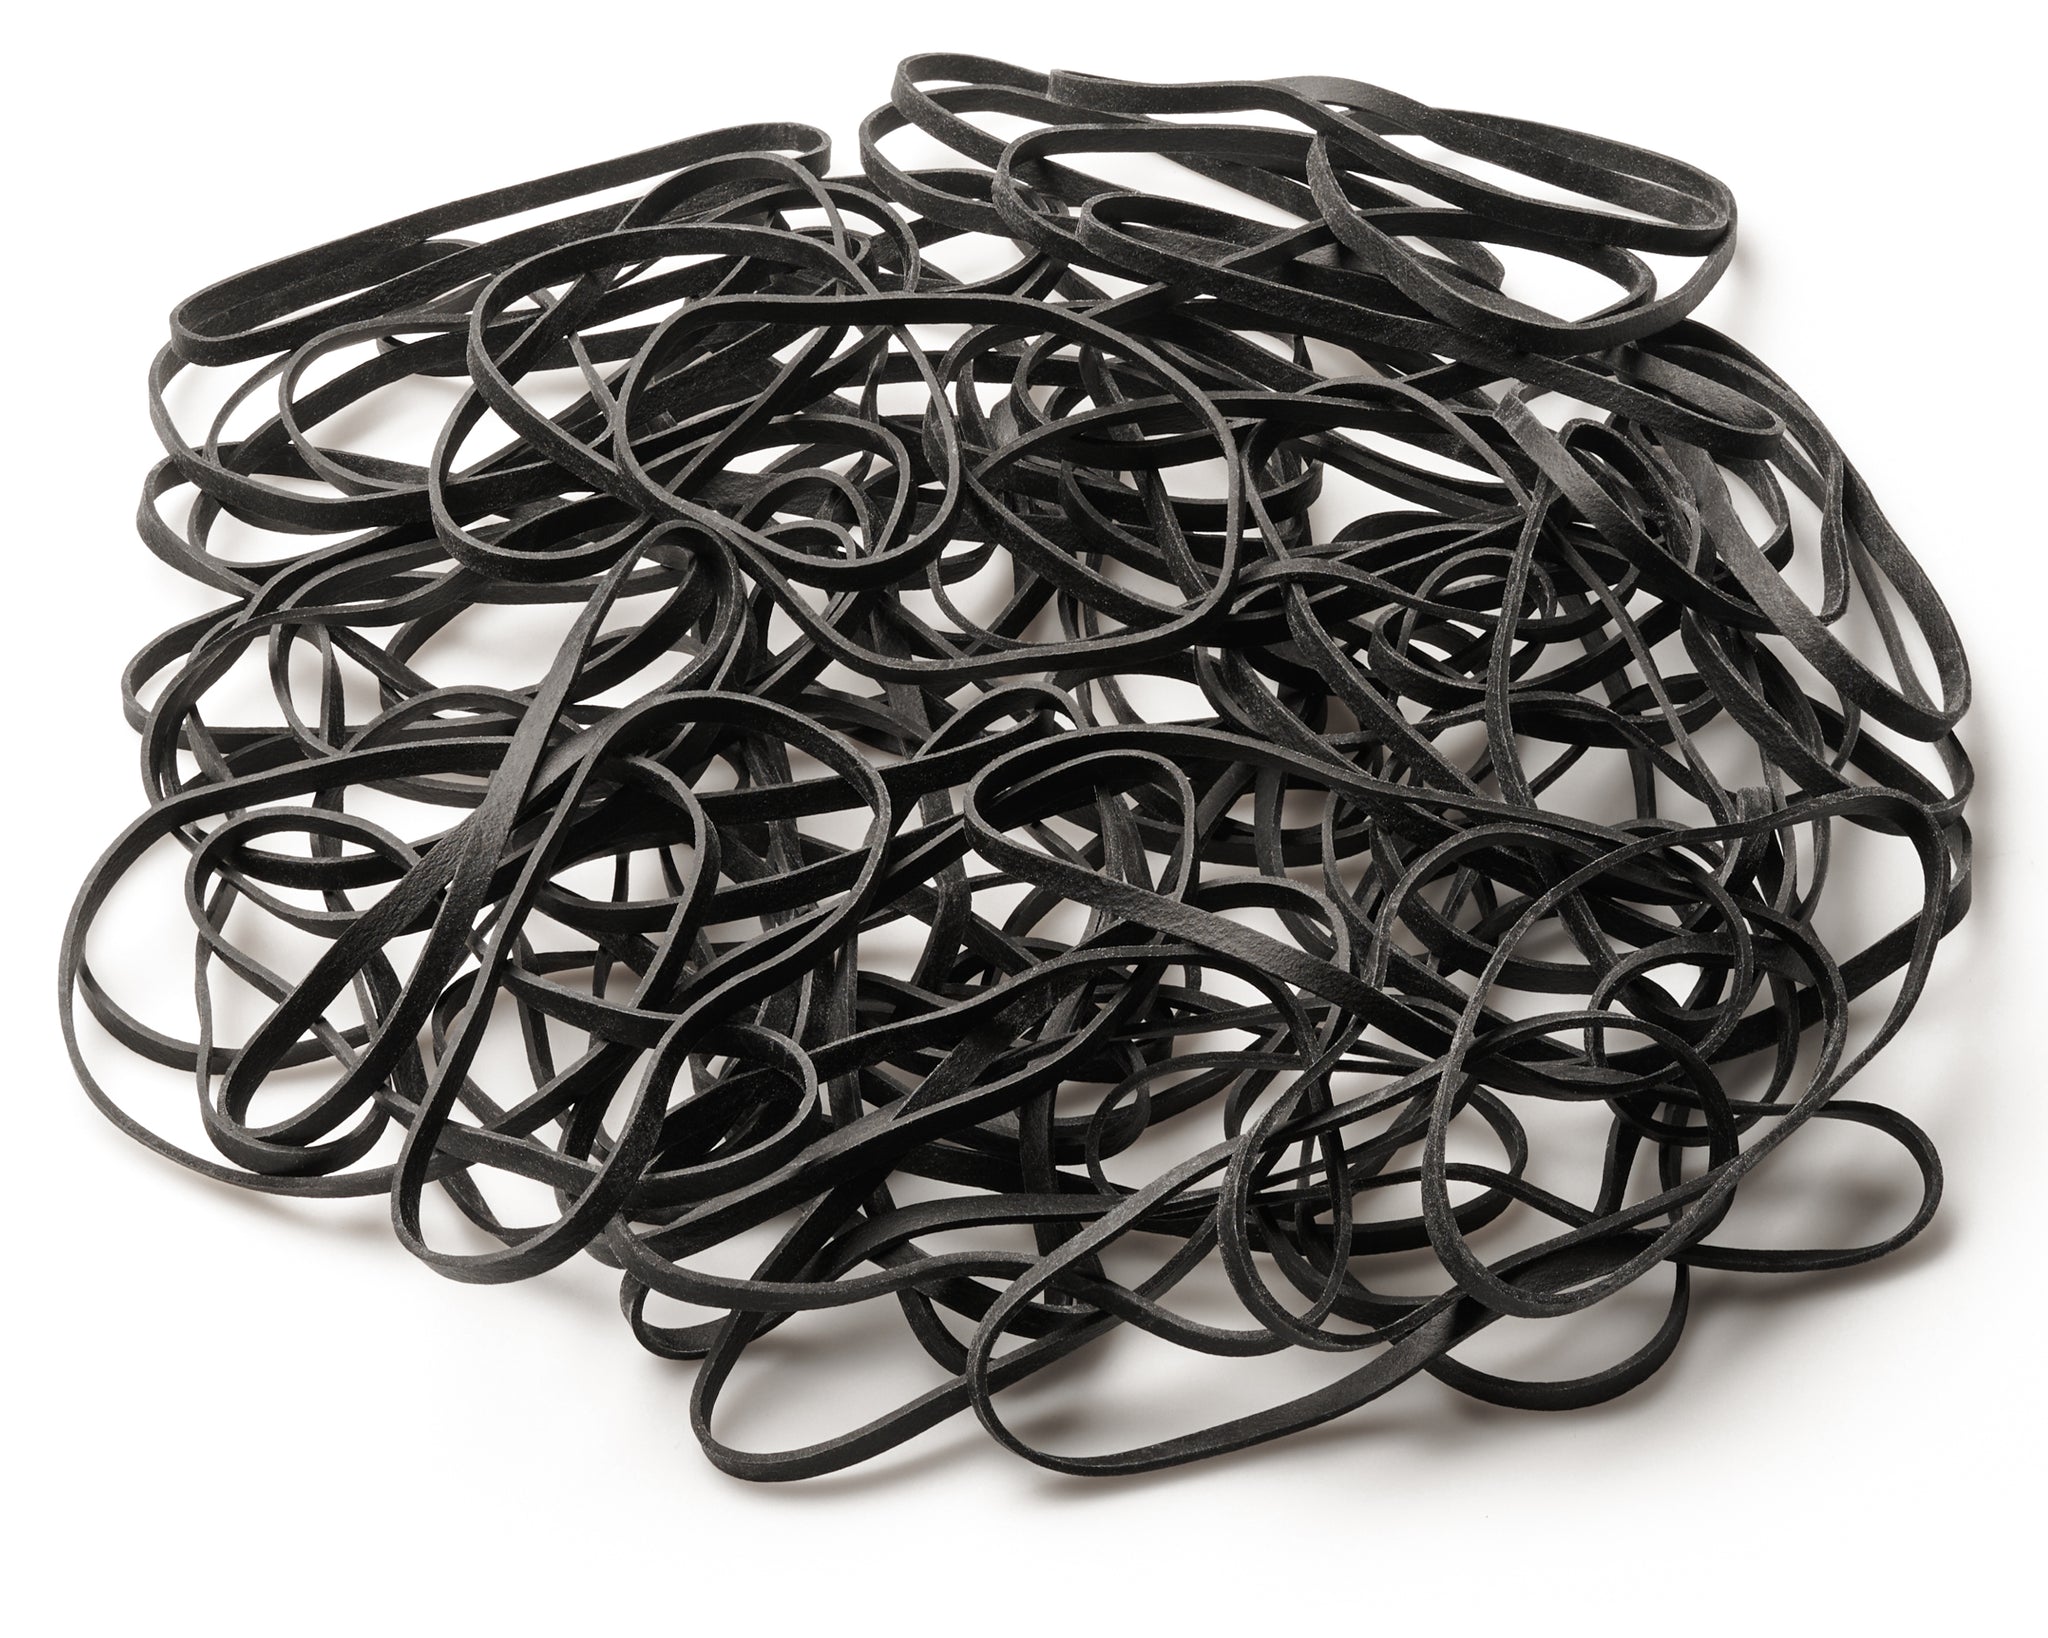 UV Resistant Black Rubber Bands – Tackle Room